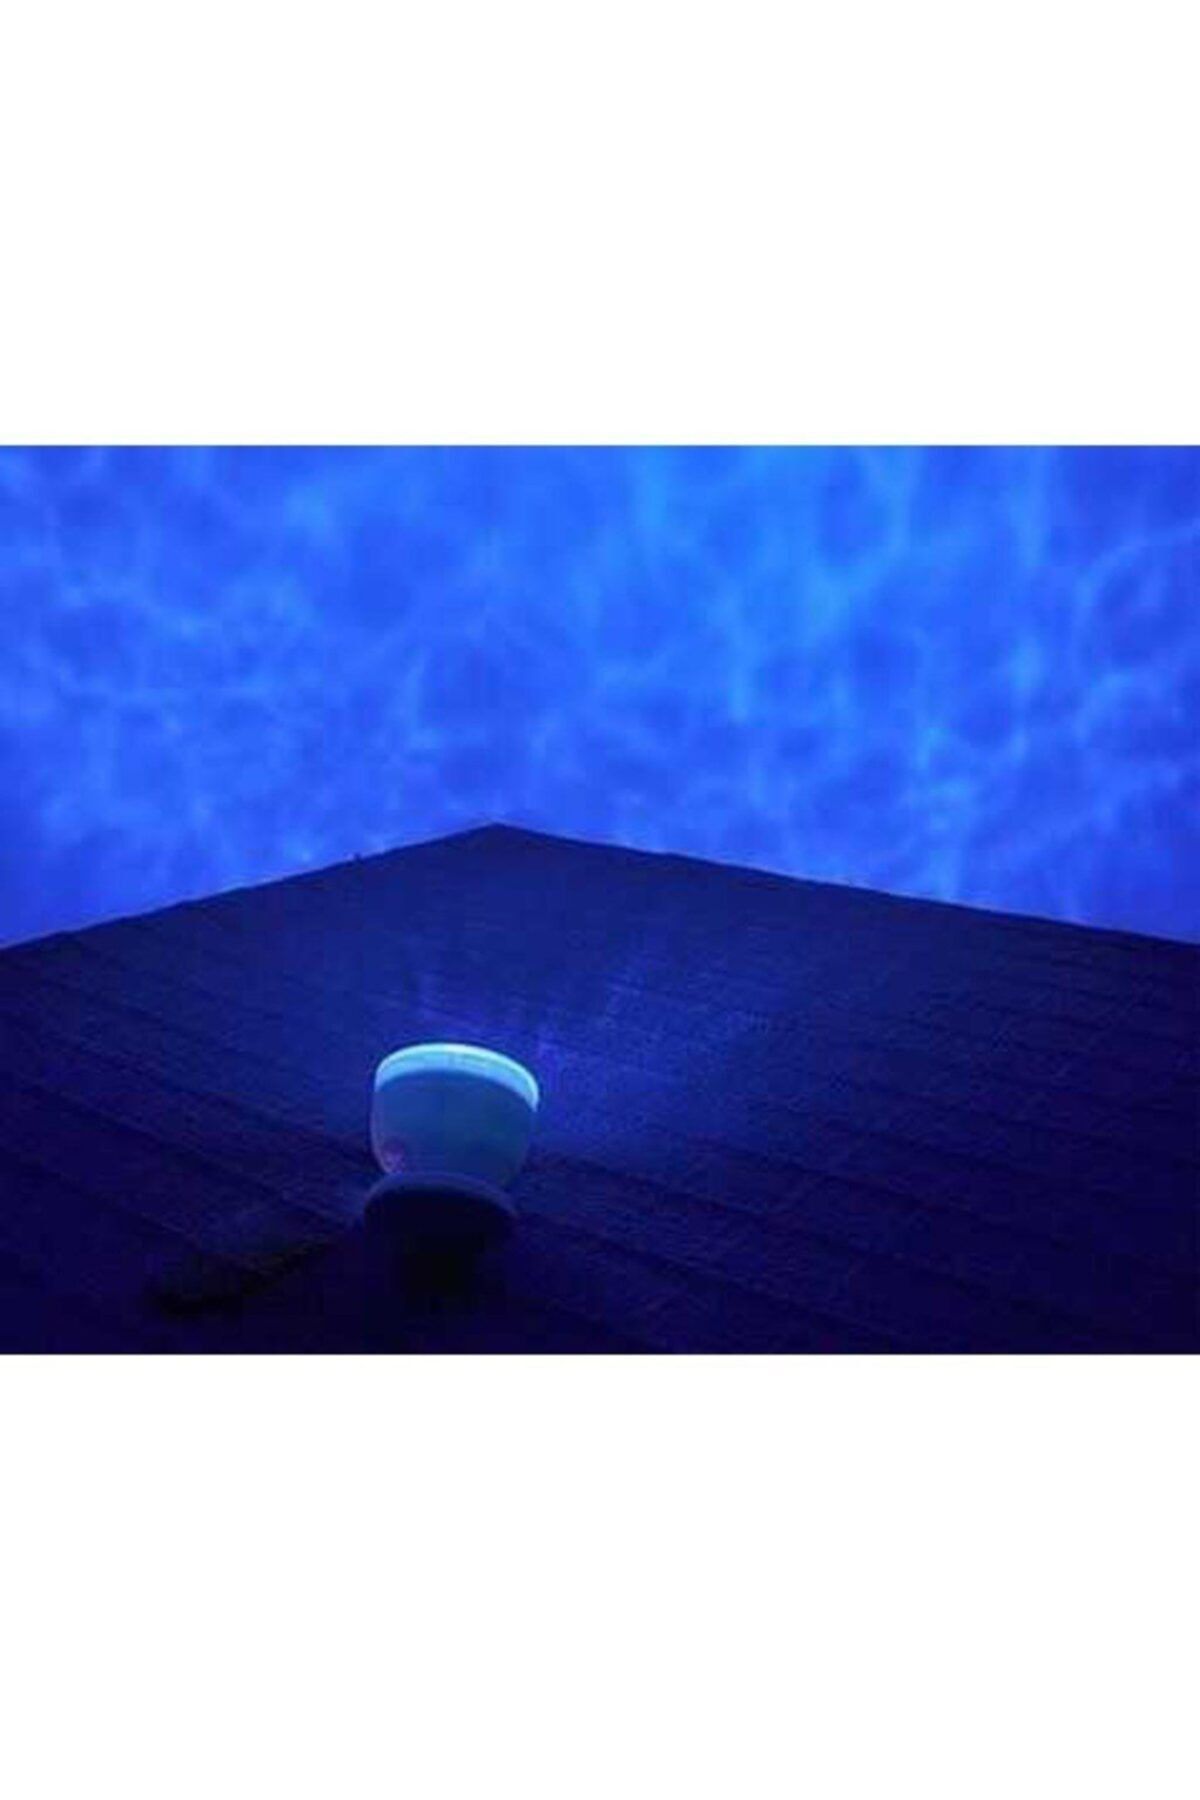 pazariz Mavi Dalga Görünümlü Projektör Okyanus Gece Lambası